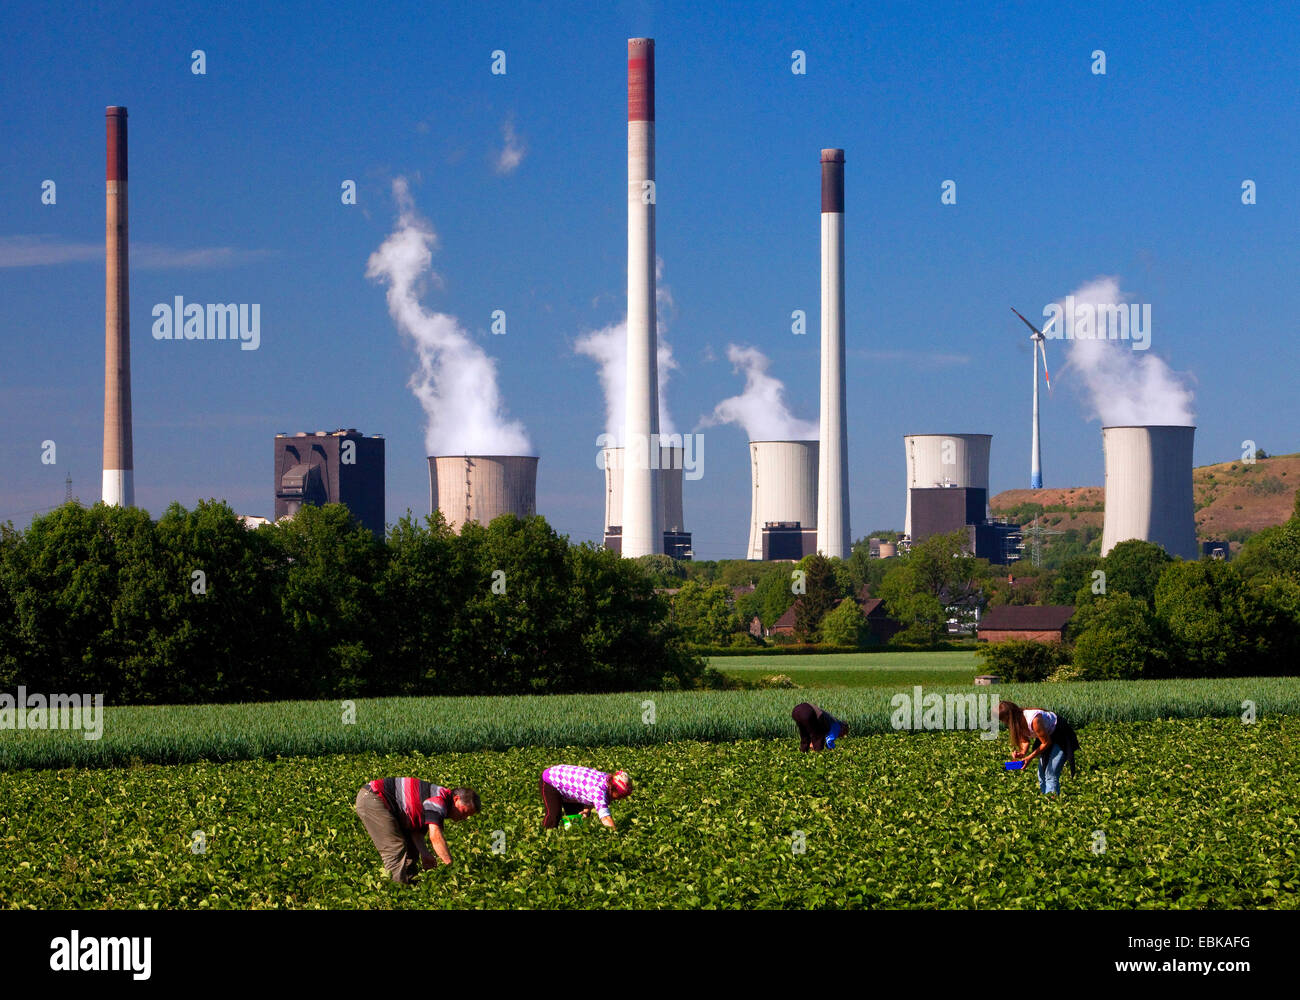 Personen pflückt Erdbeeren, Kohlekraftwerke Werk Scholven im Hintergrund, Gelsenkirchen, Ruhrgebiet, Nordrhein-Westfalen, Deutschland Stockfoto